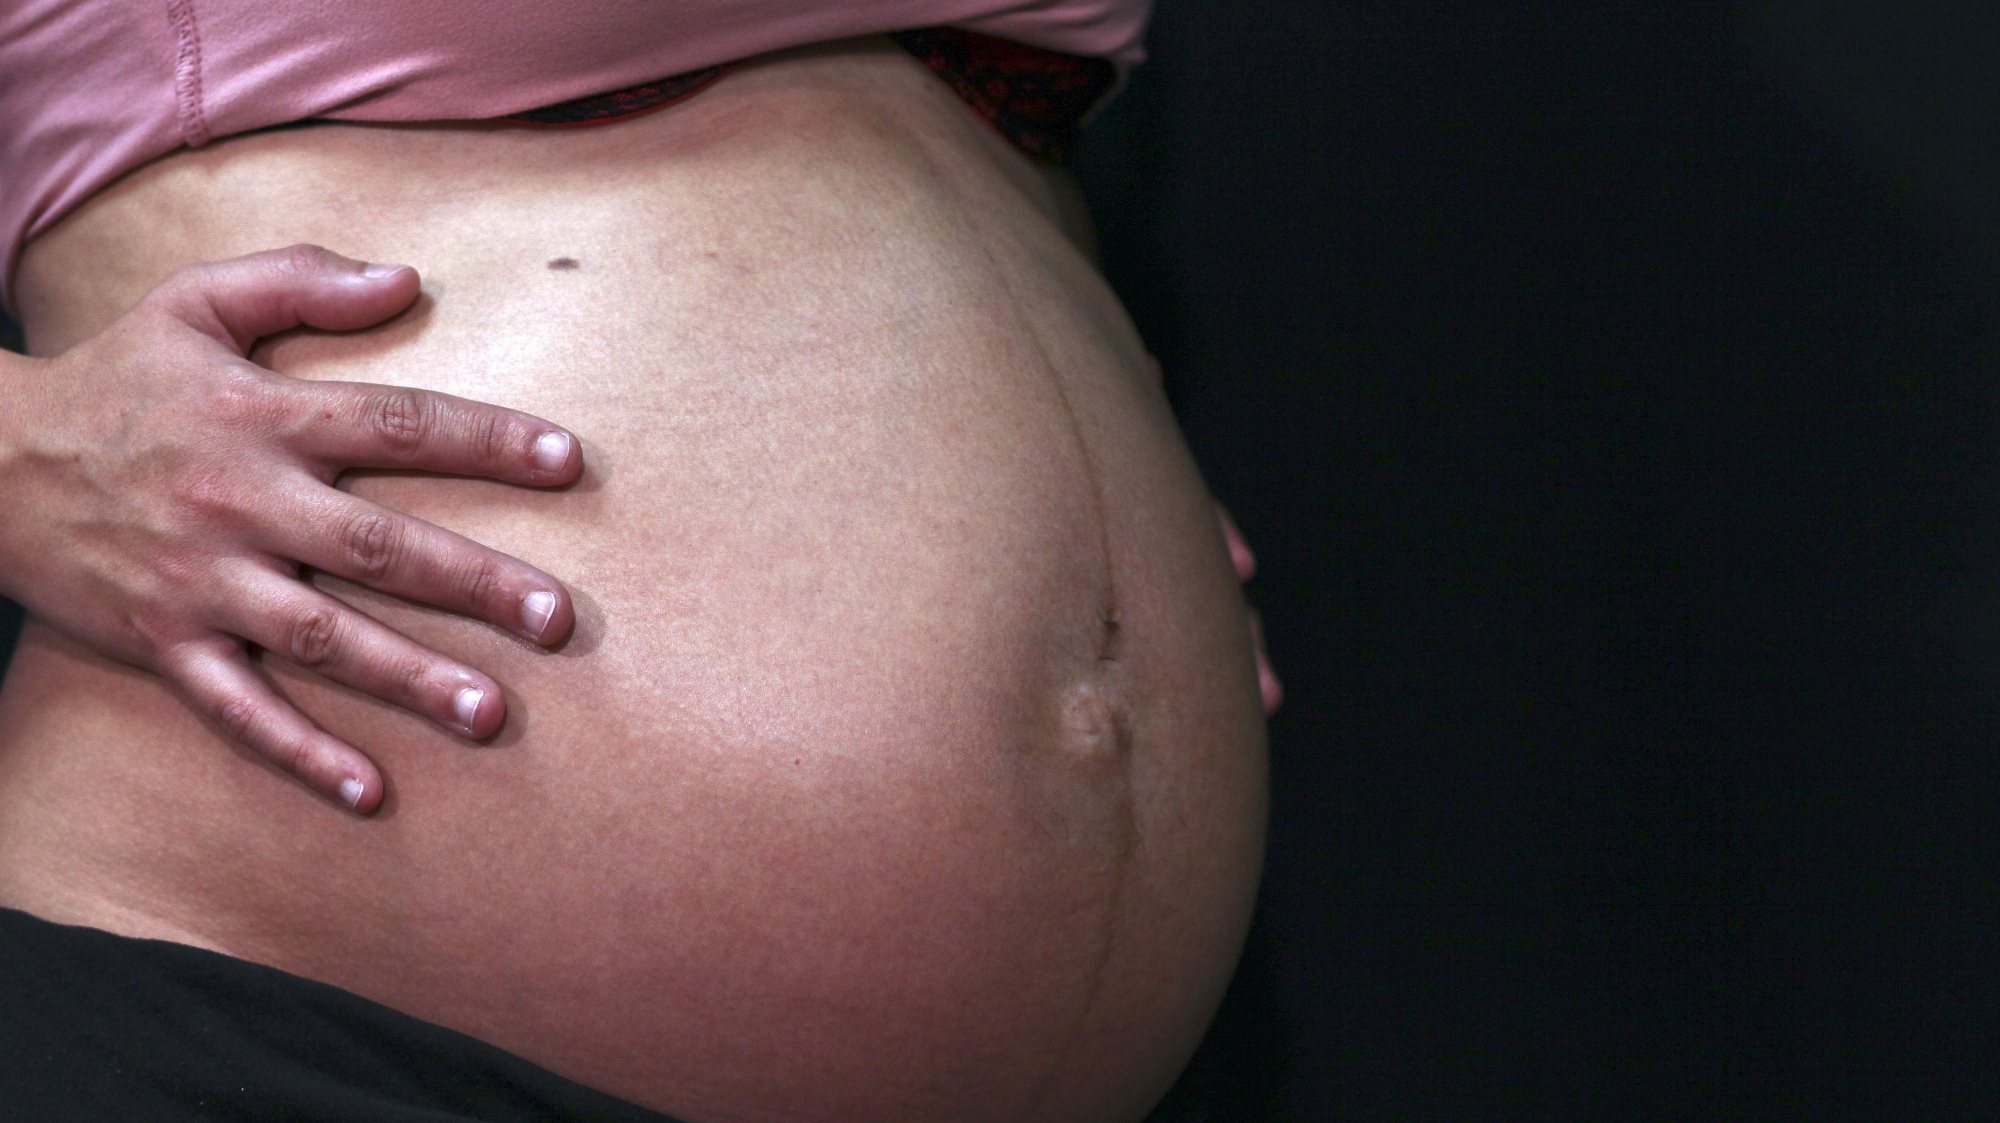 O alerta divulgado surge no seguimento de uma orientação da Direção-Geral da Saúde (DGS) sobre gravidez e parto no contexto da pandemia